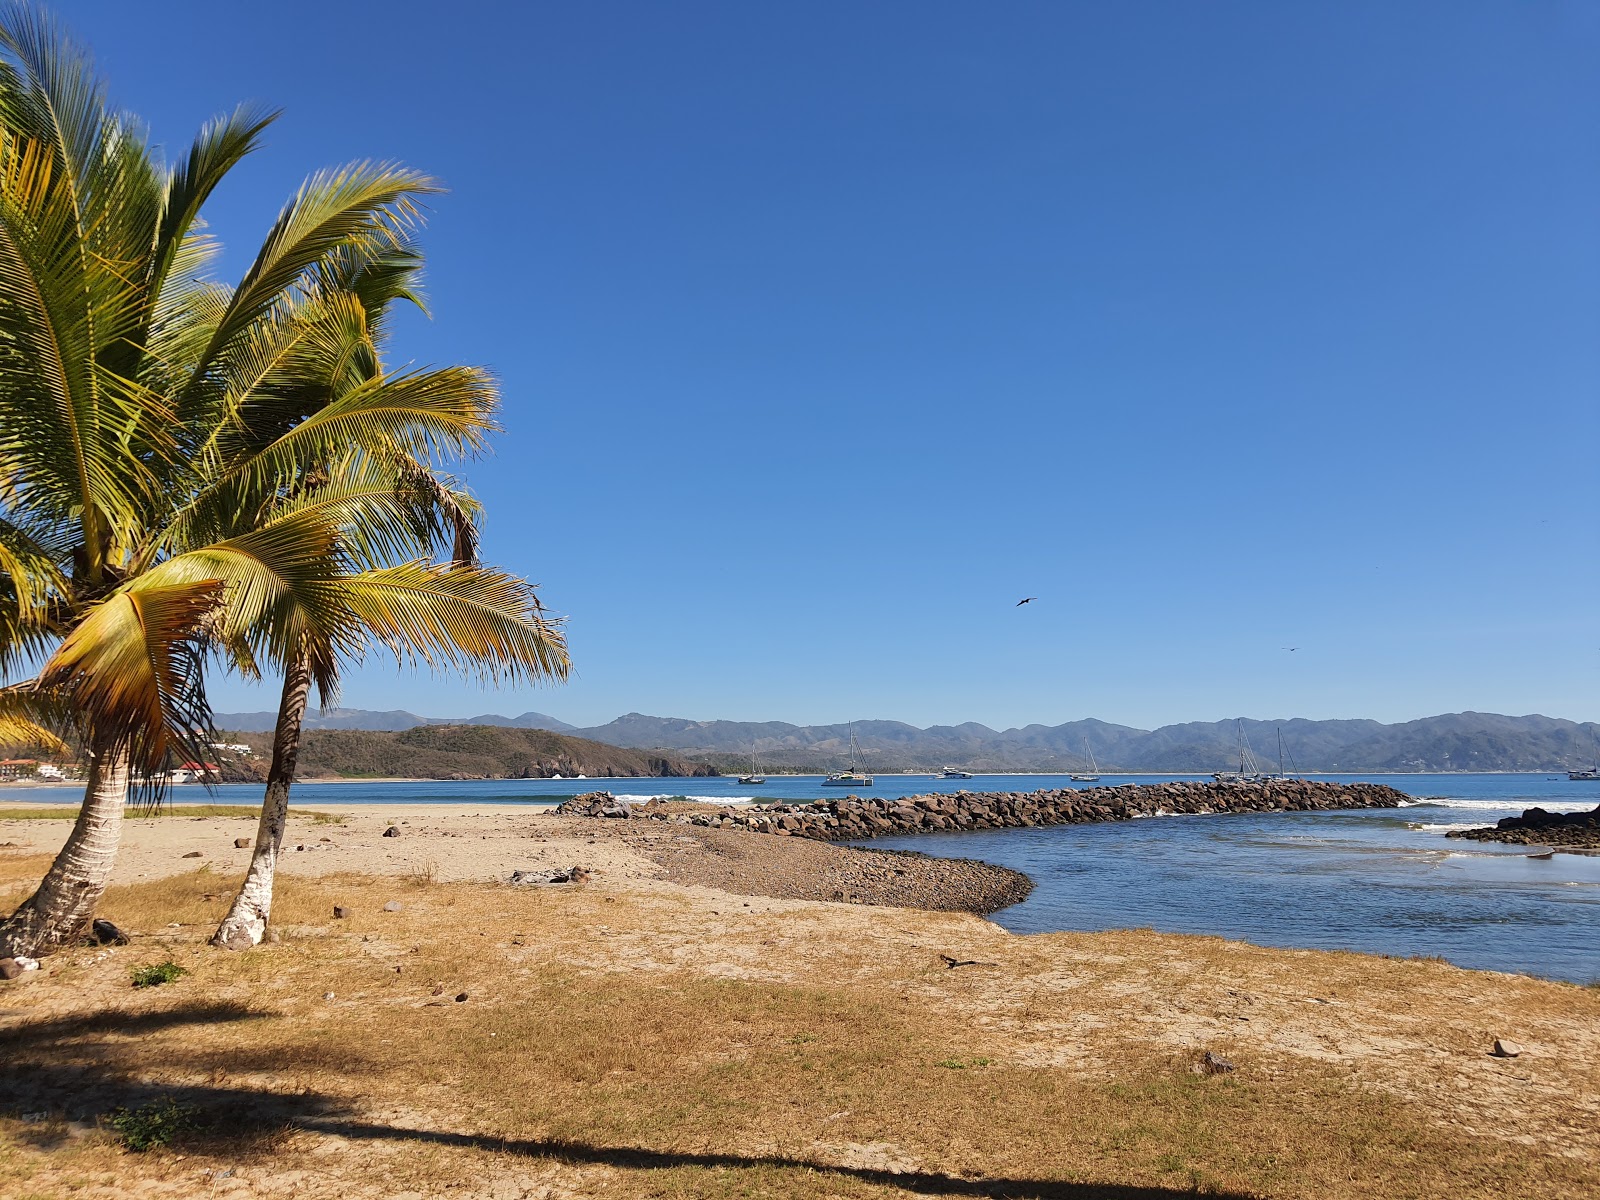 Foto af Boca De Iguanas II - populært sted blandt afslapningskendere